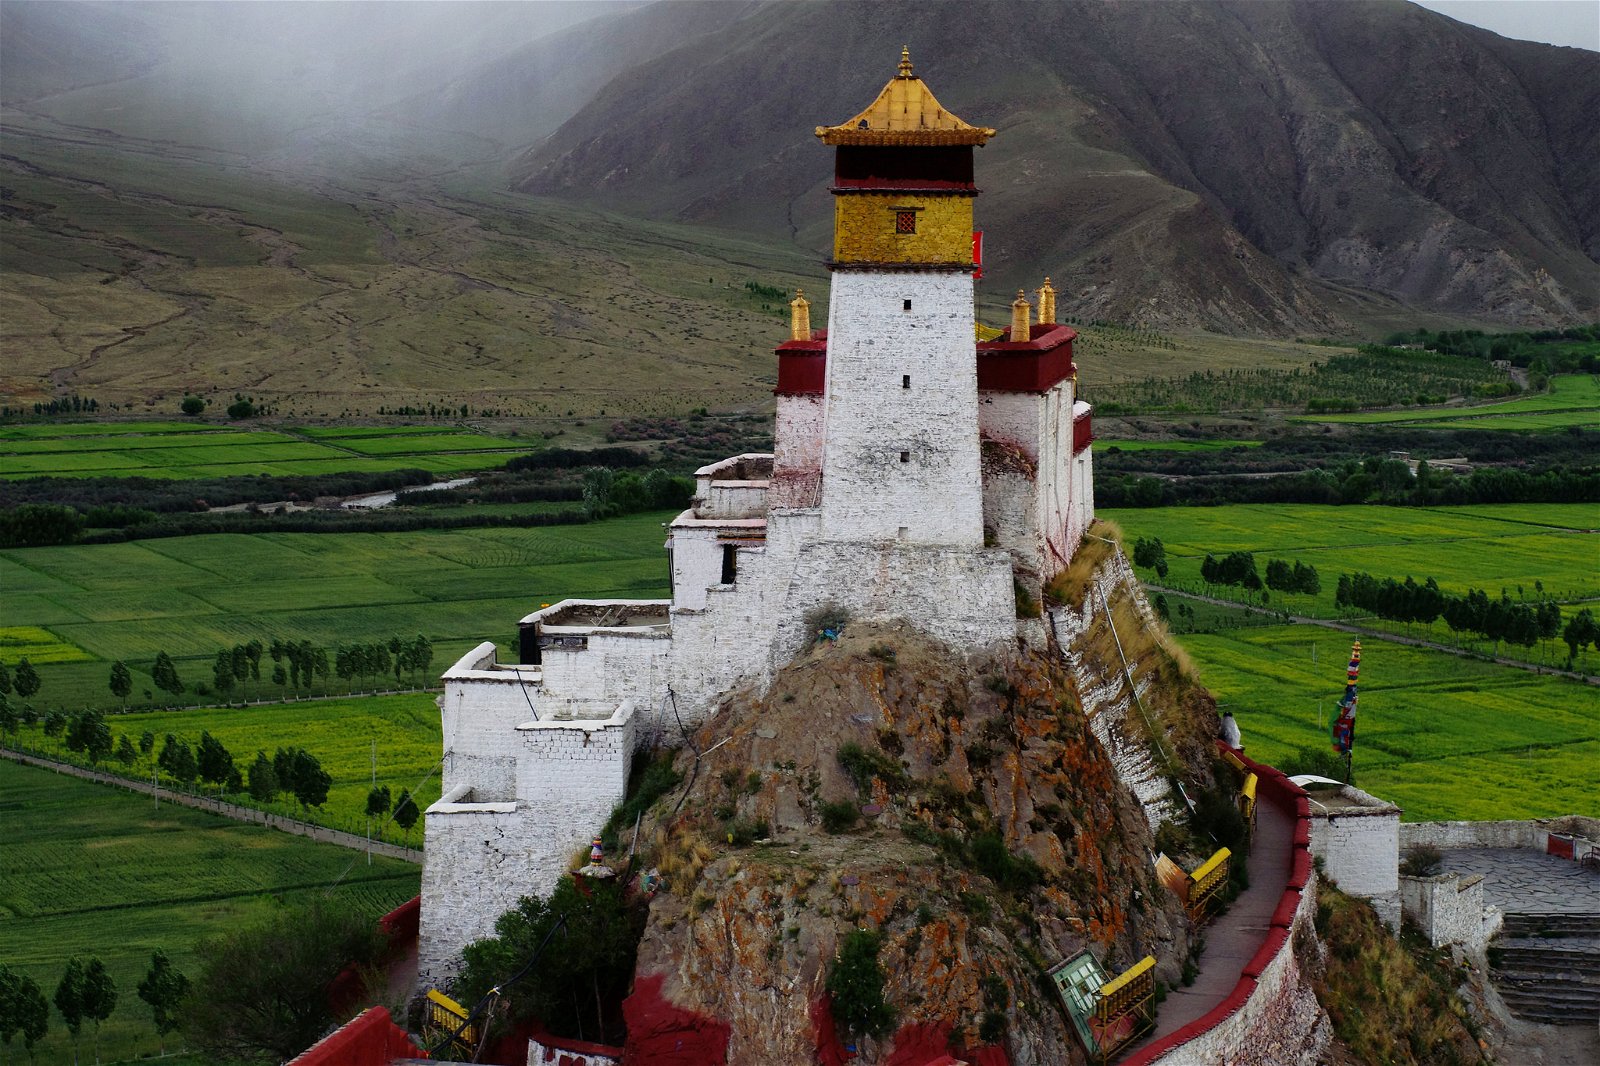 Tibet Travel 6 days : Lhasa Tsedang Tour